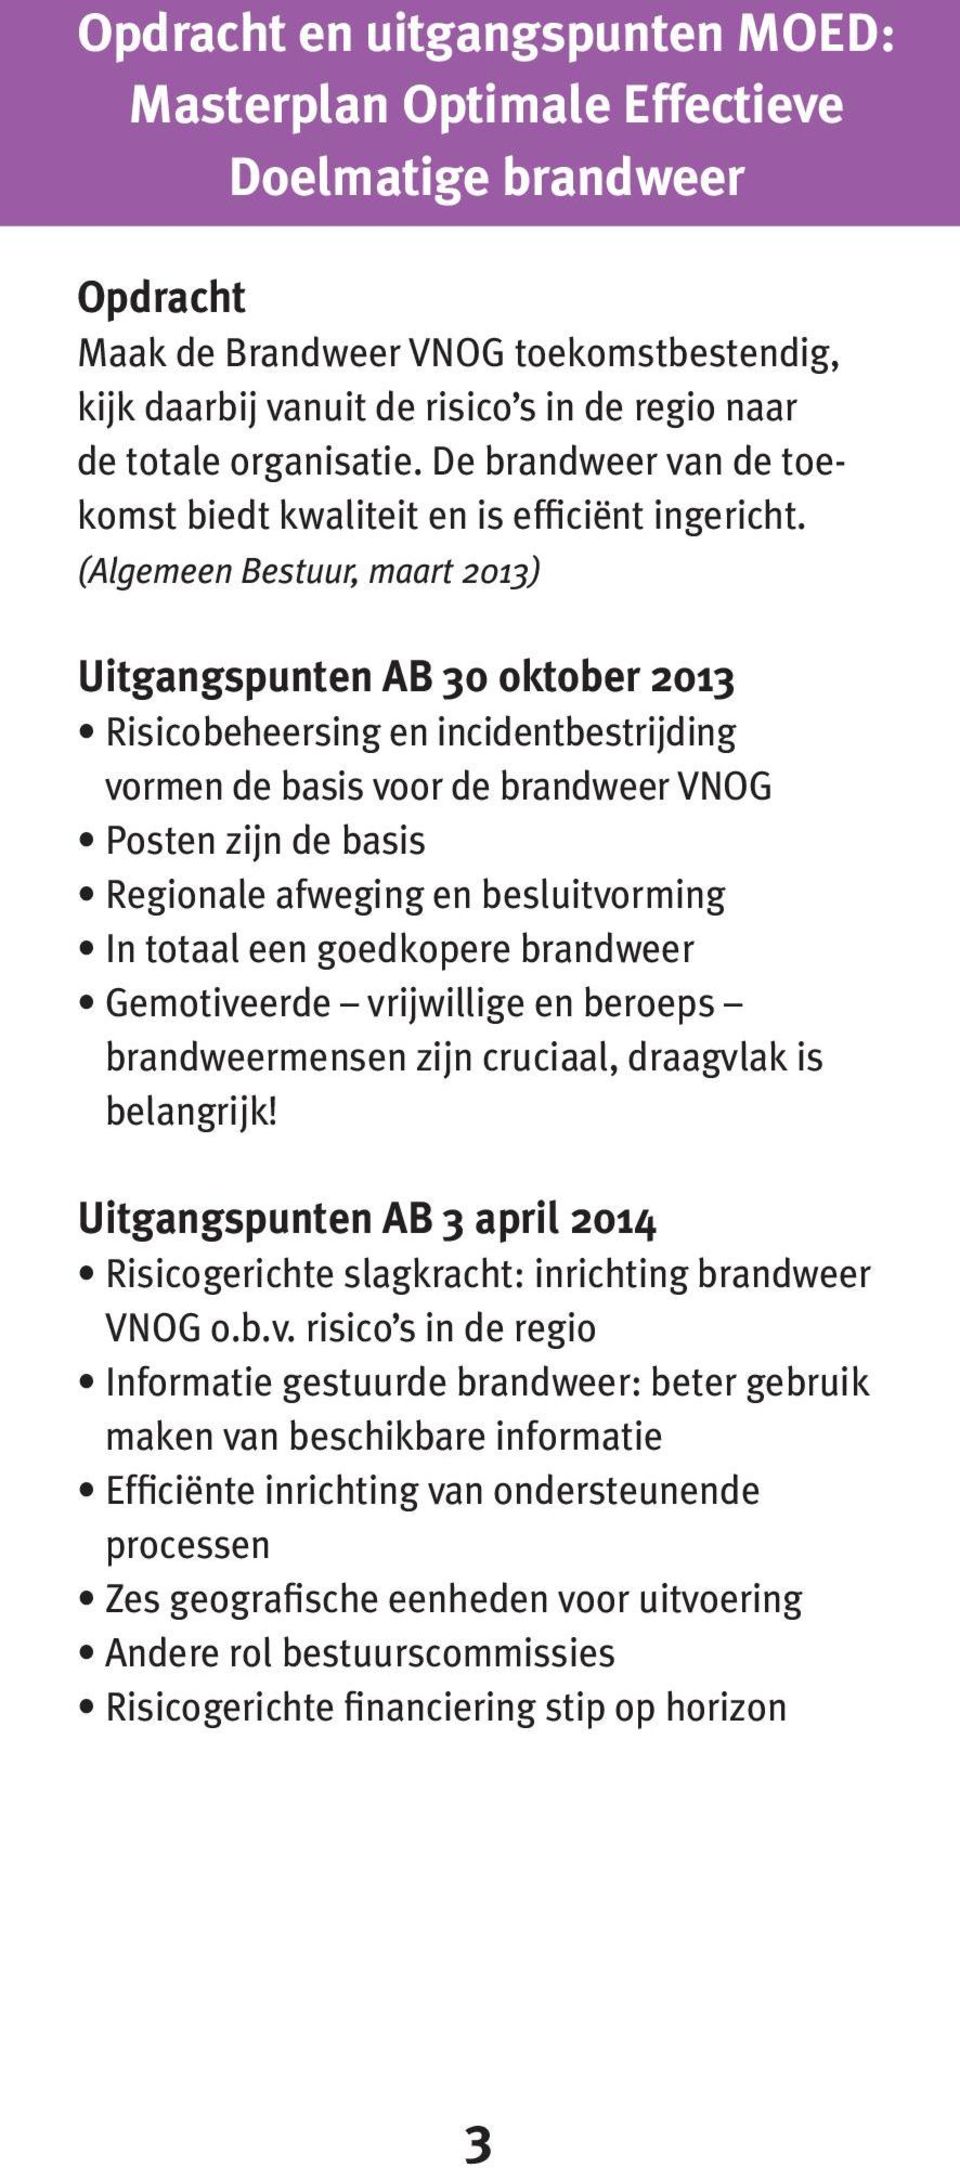 (Algemeen Bestuur, maart 2013) Uitgangspunten AB 30 oktober 2013 Risico beheersing en incidentbestrijding vormen de basis voor de brandweer VNOG Posten zijn de basis Regionale afweging en